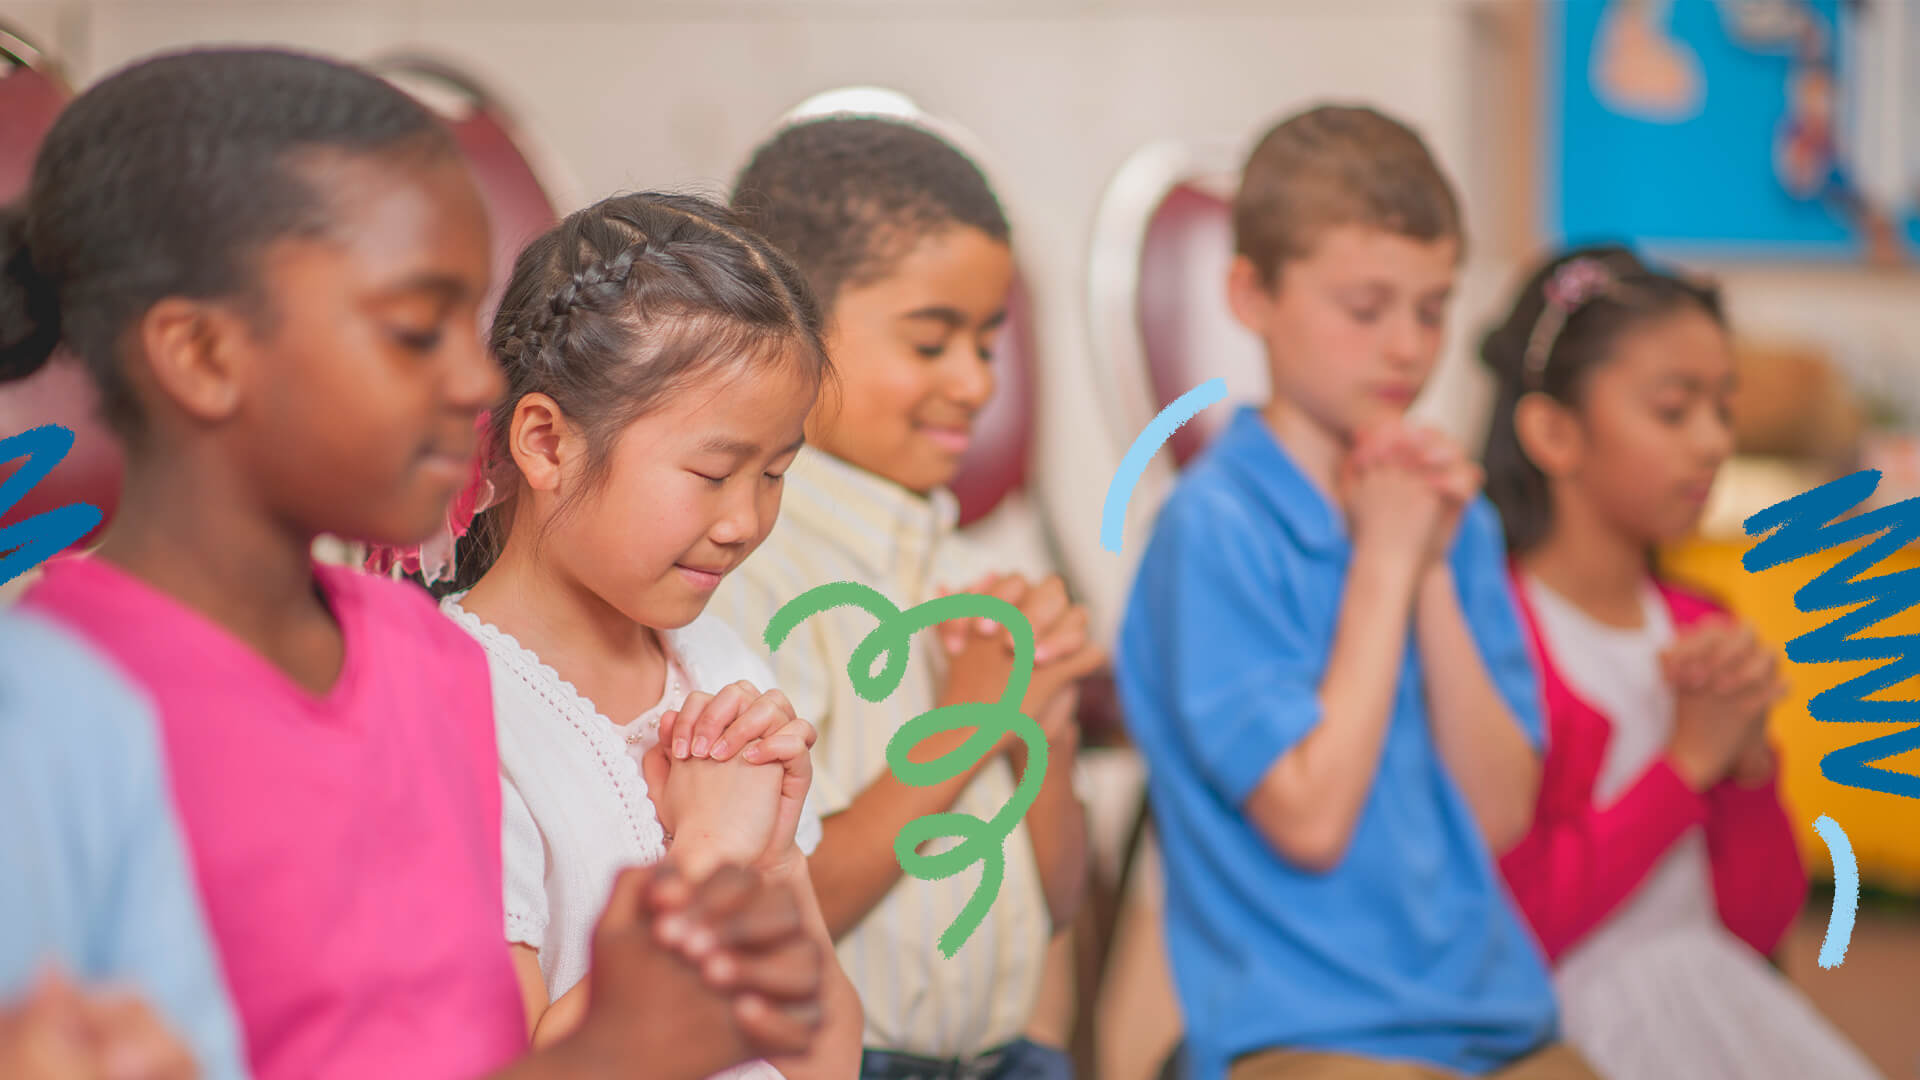 Crianças de diferentes etnias e usando roupas coloridas estão rezando nesta foto. A matéria é sobre ensino religioso nas escolas.